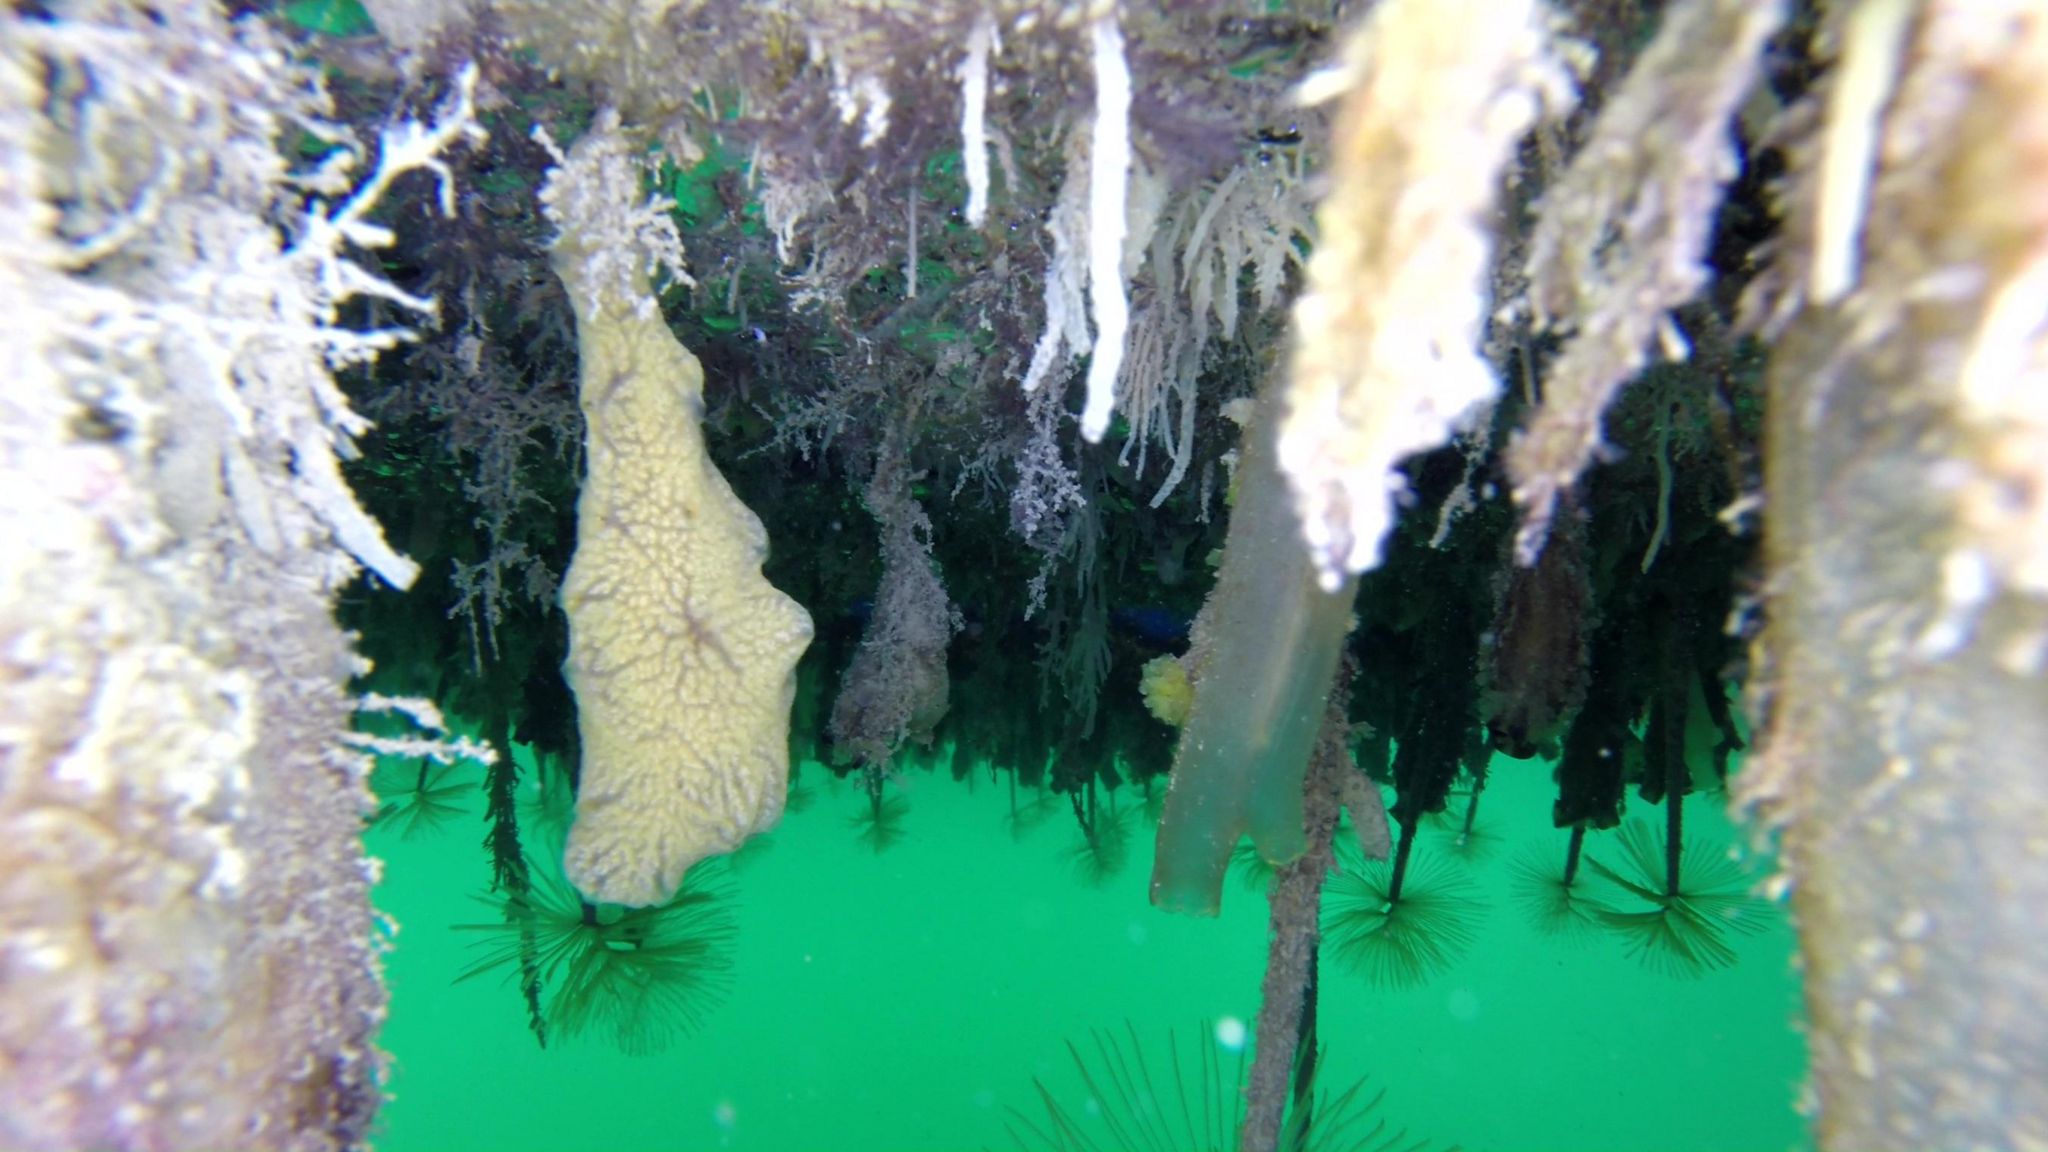 Invasive species Sea Vomit found in Jersey Marina pic